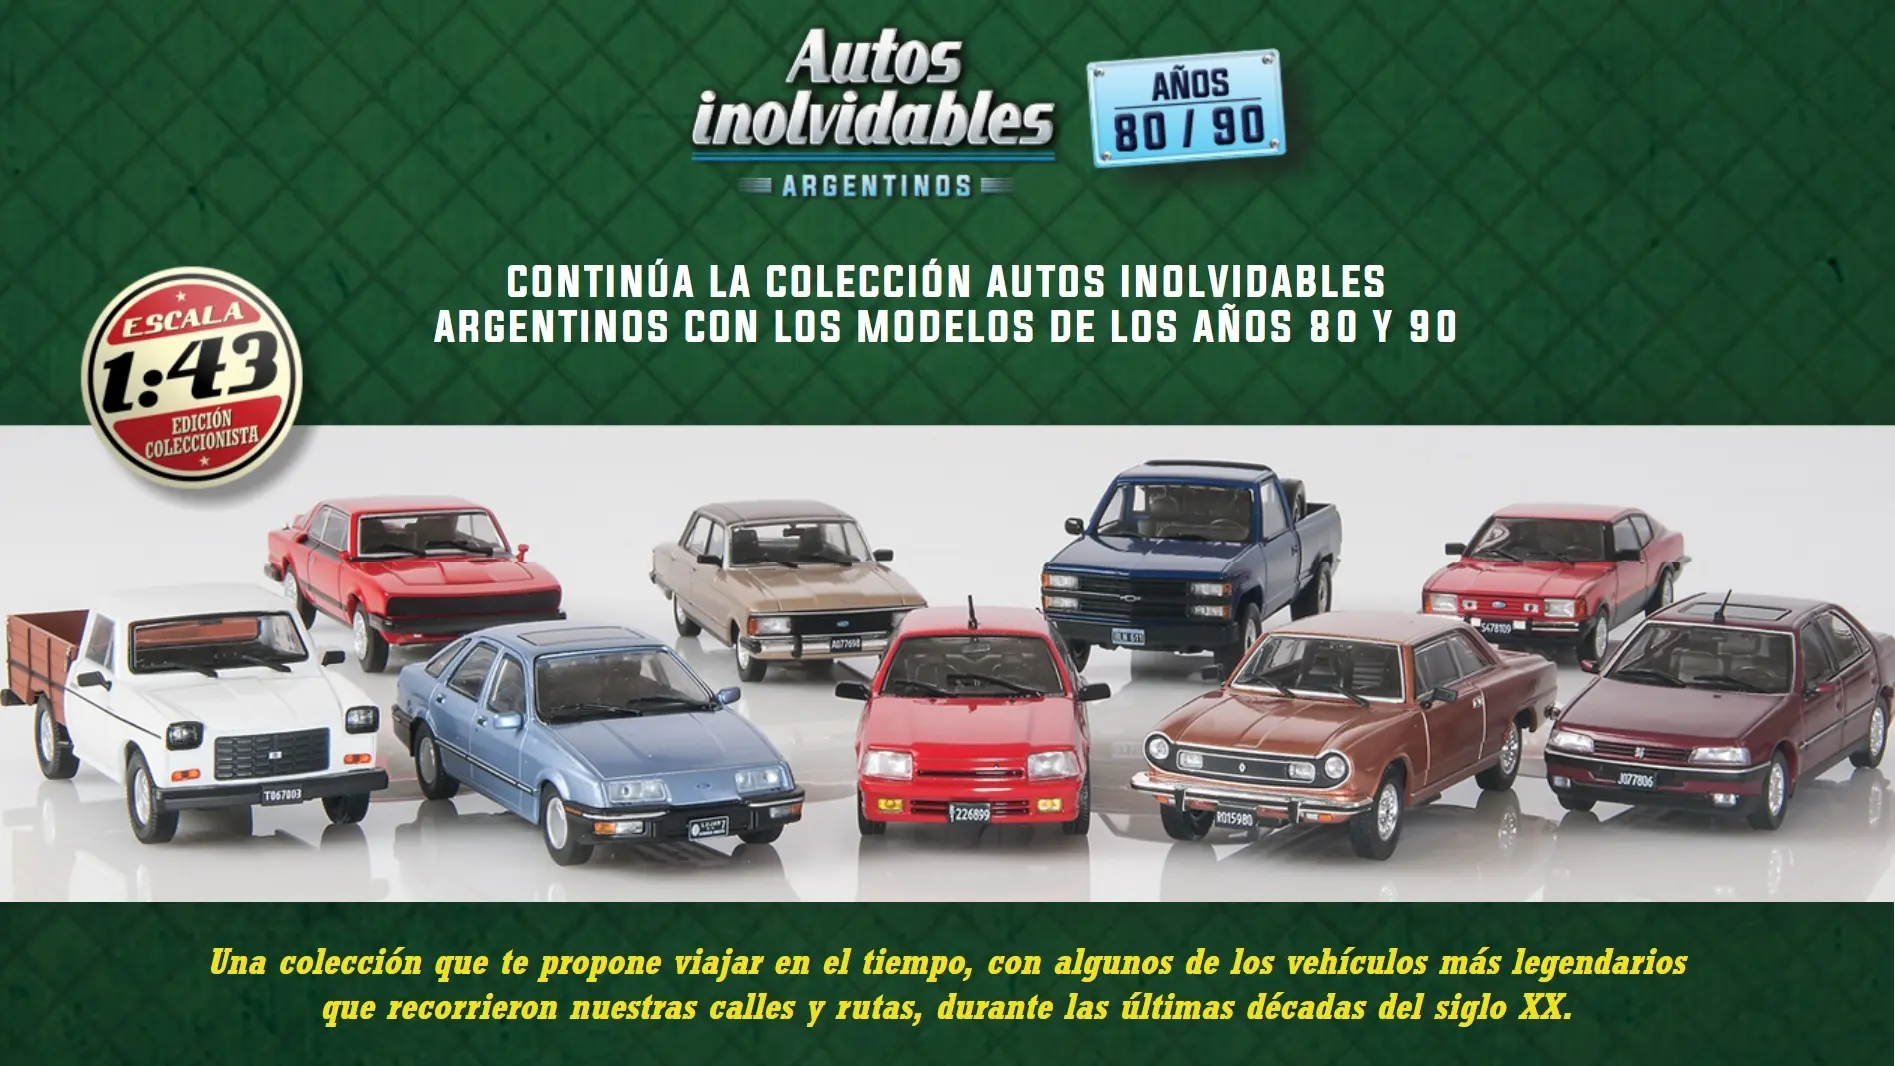 coleccion de ferraris chevere en argentina - Qué escala son los autos inolvidables